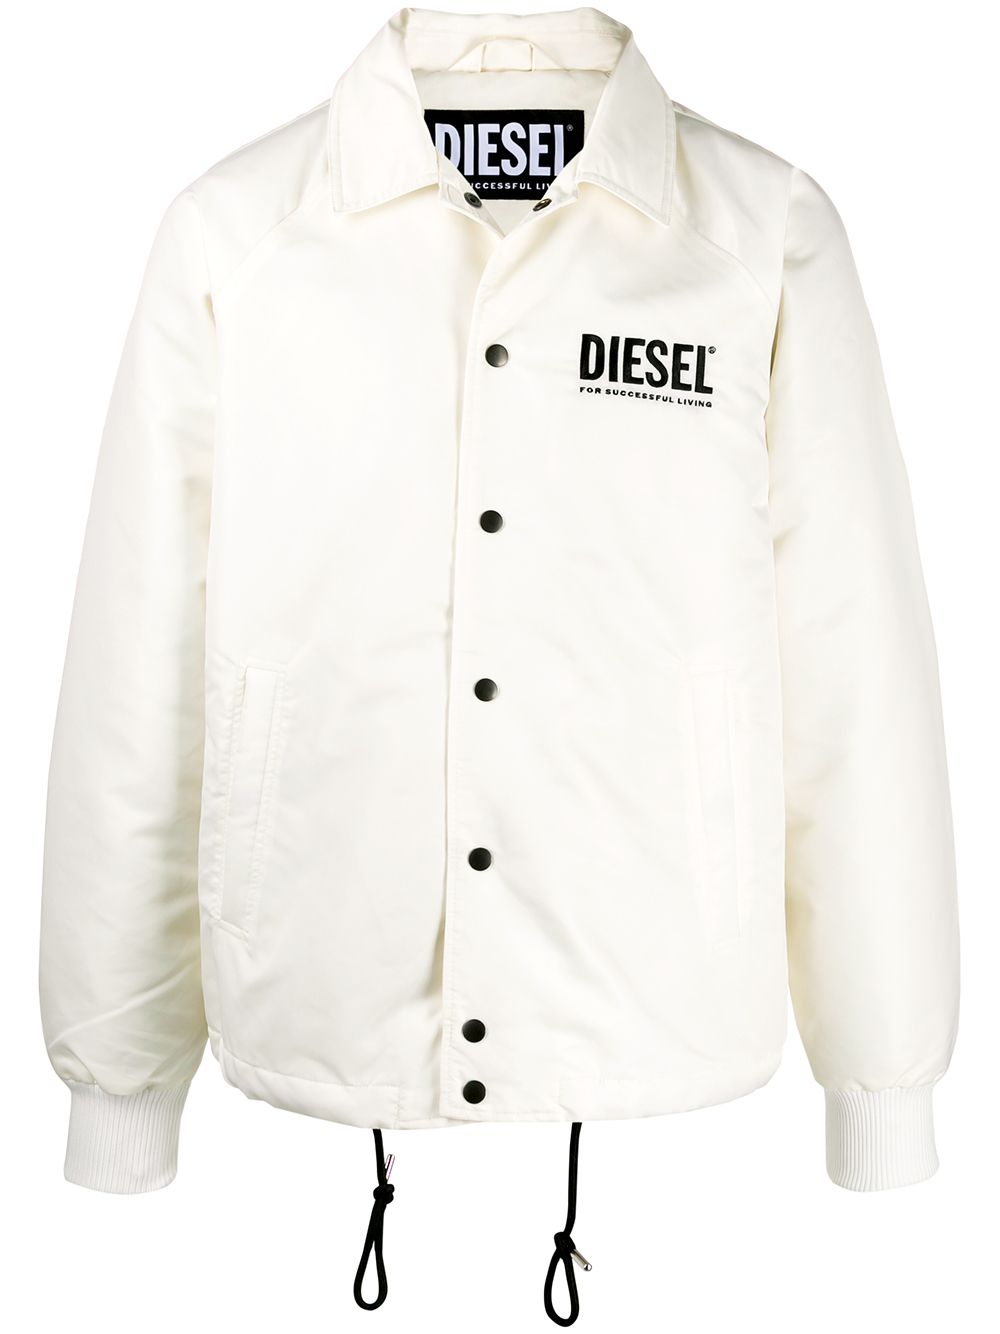 Дизель бел. Белая ветровка мужская Diesel. Diesel Sport ветровка белая. Ветровка Diesel 1987. Куртка Diesel белая.